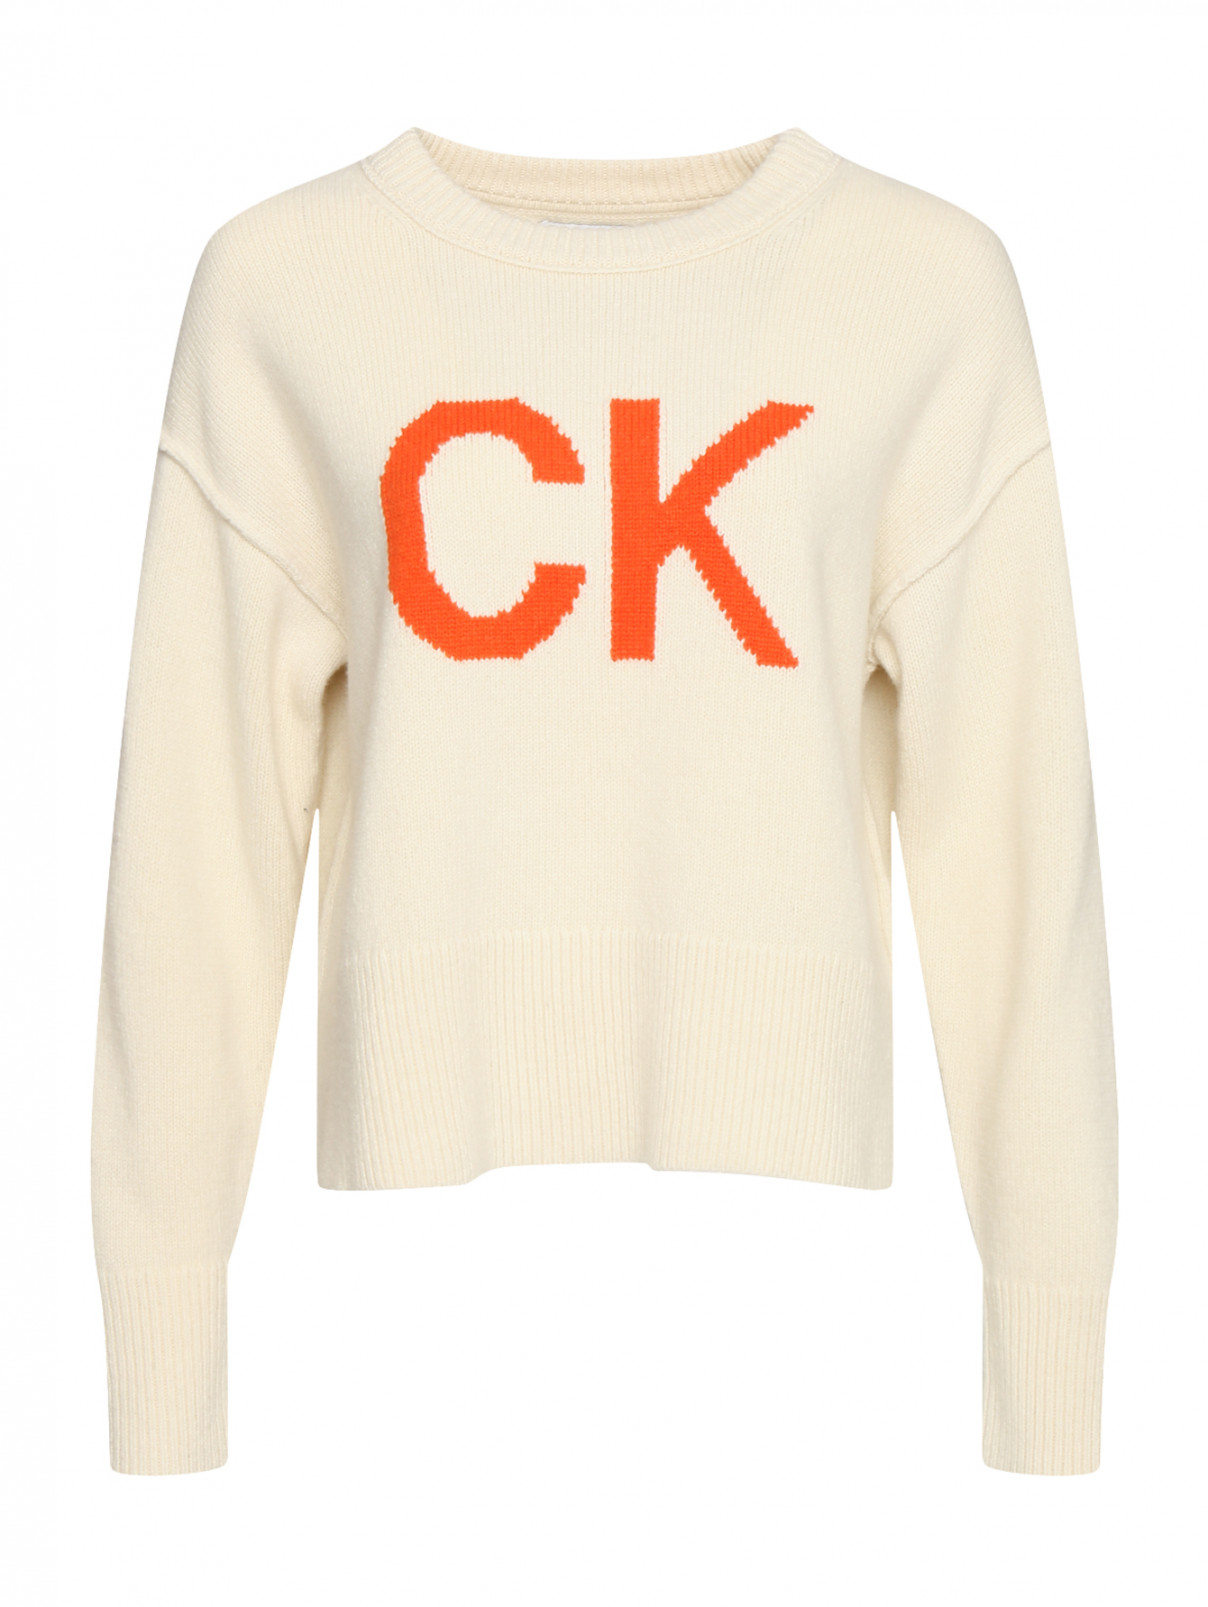 Шерстяной джемпер с логотипом Calvin Klein  –  Общий вид  – Цвет:  Бежевый